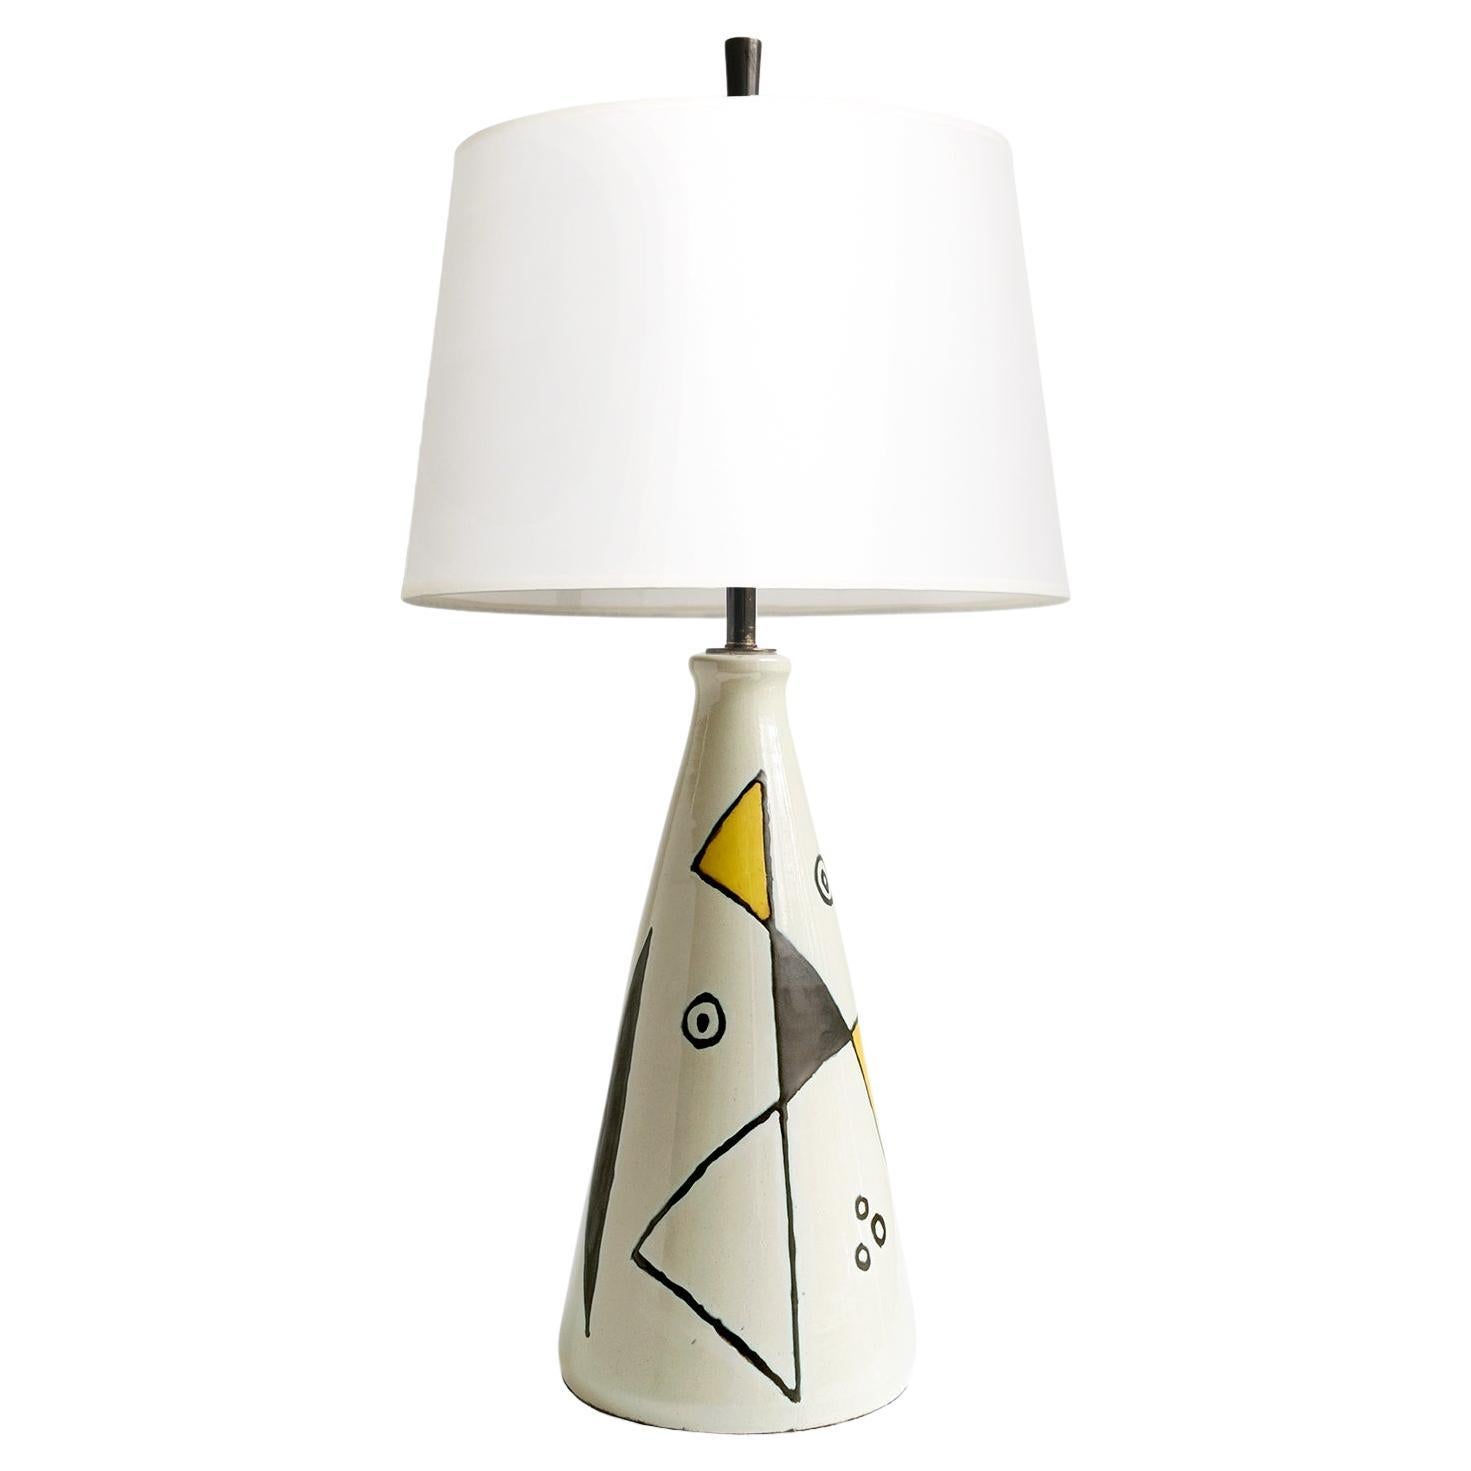 Axel Bruel Scandinavian Modern Ceramic Lamp, Denmark, 1950's For Sale